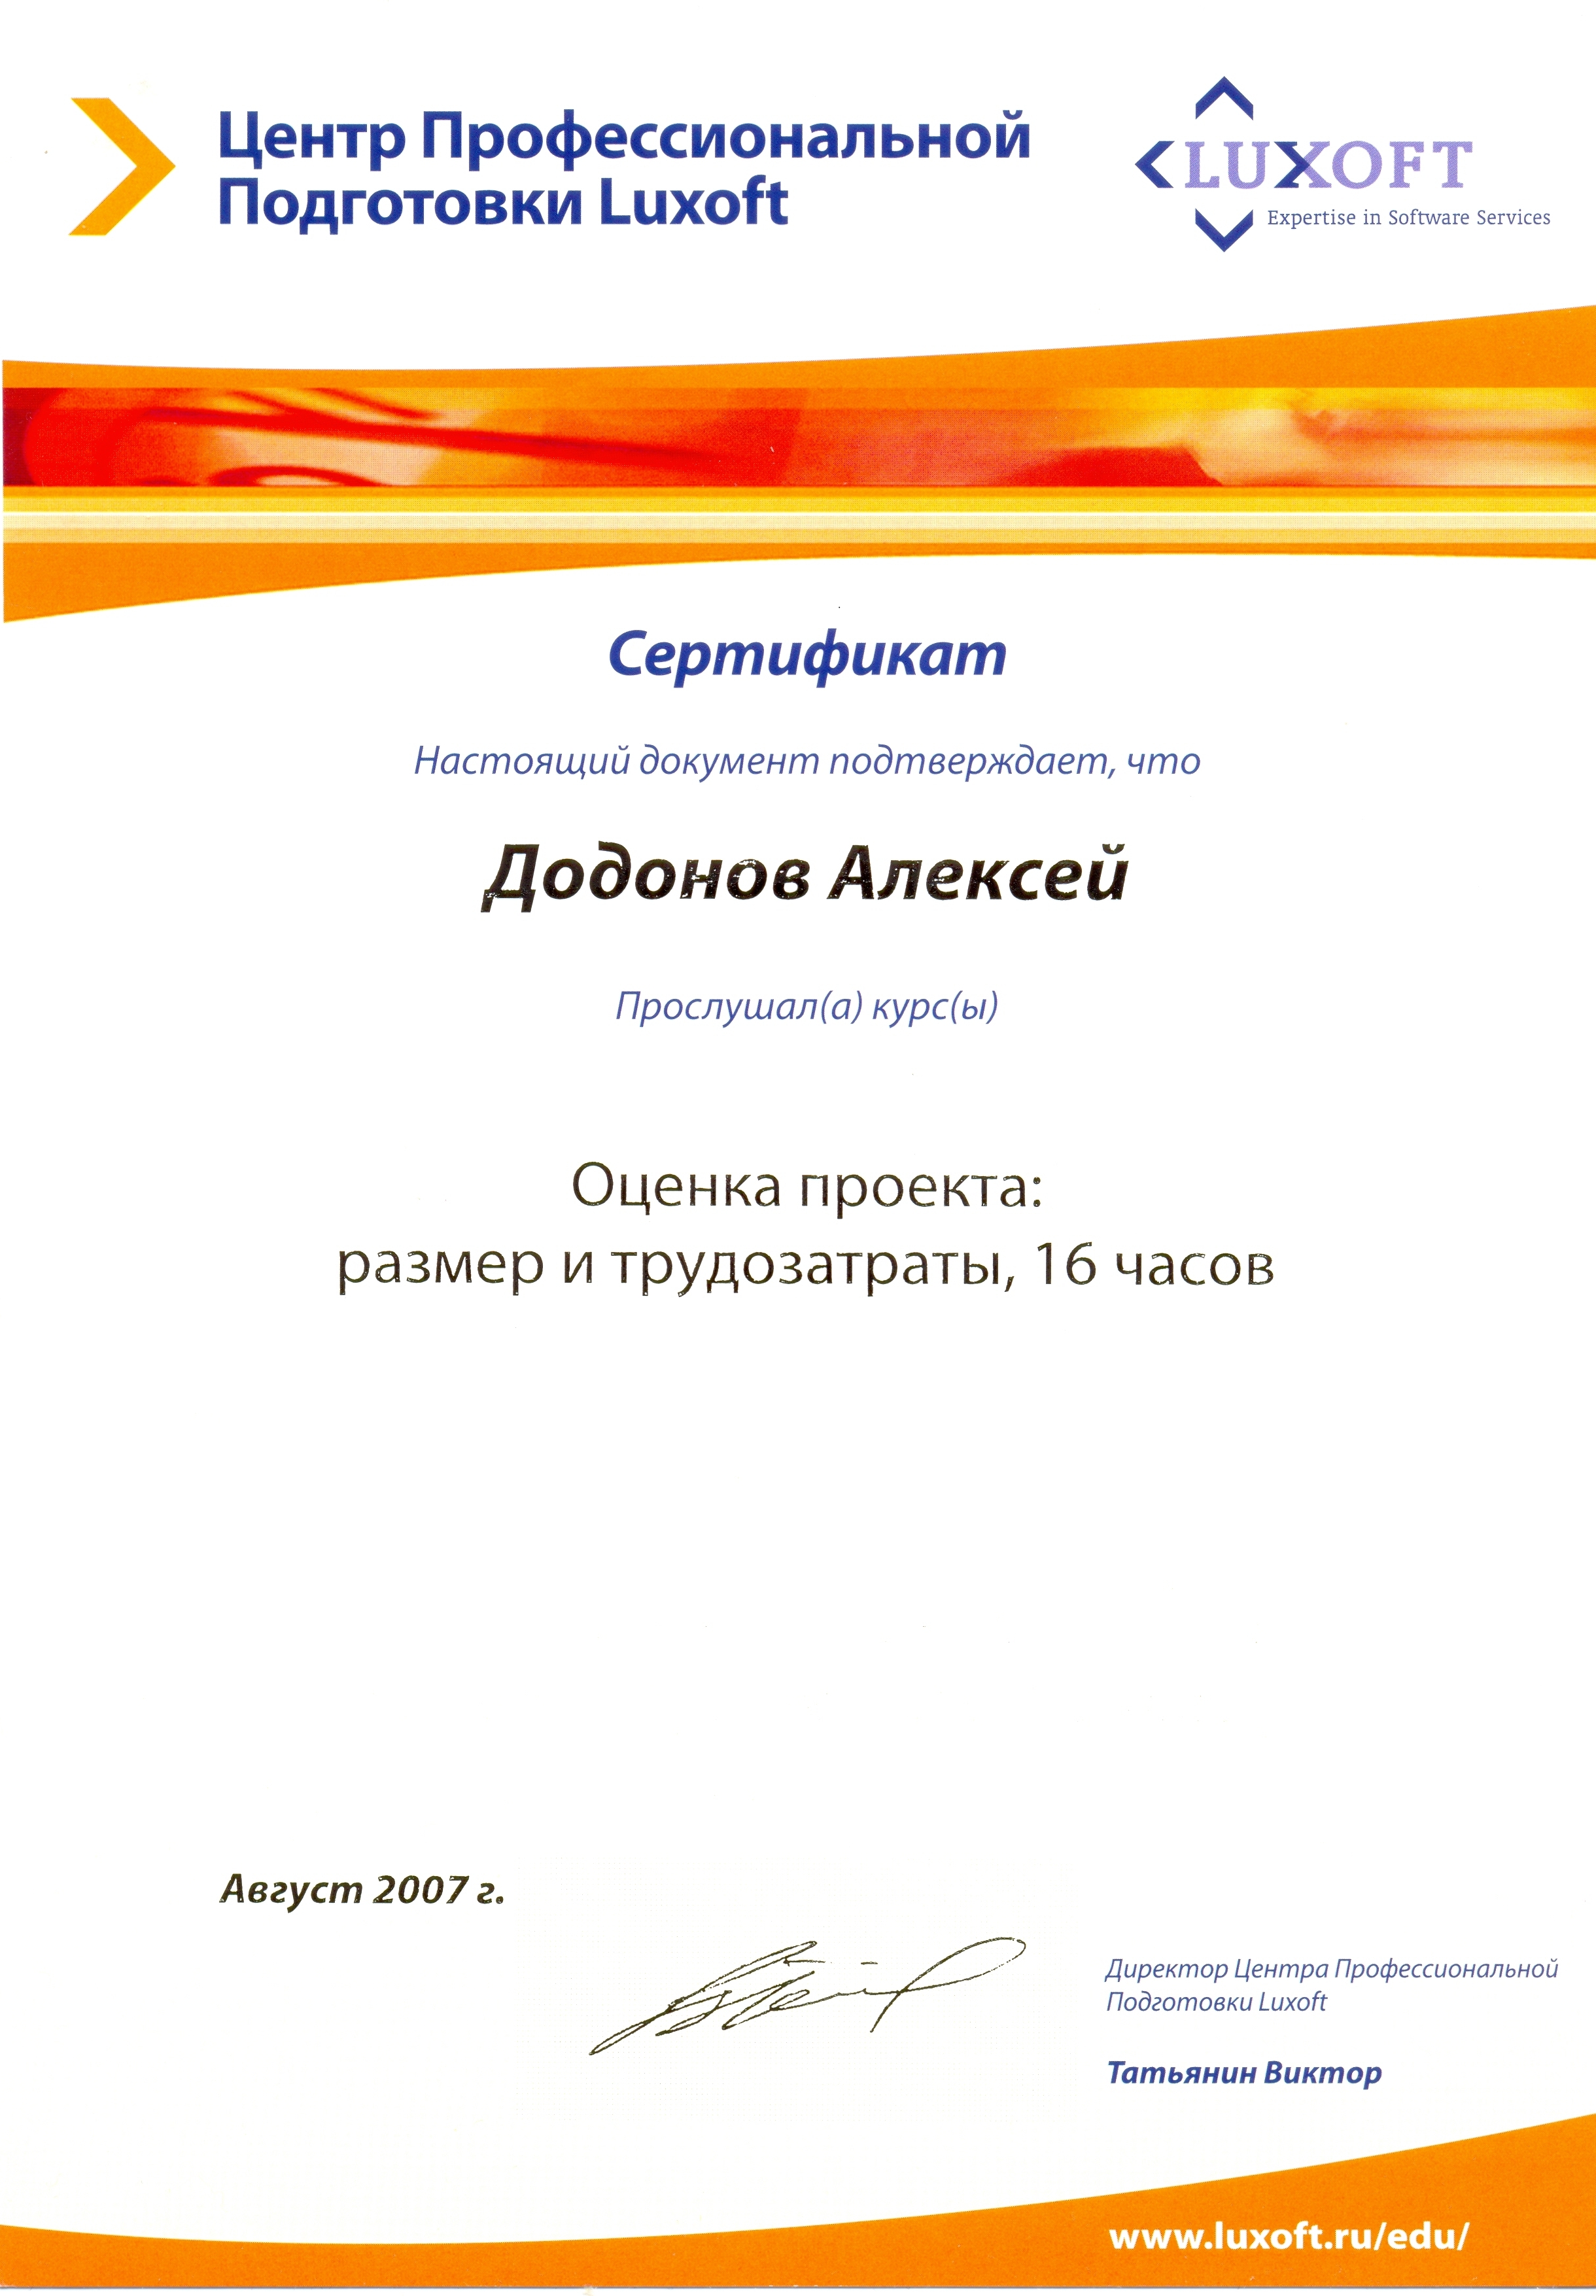 Сертификат Luxoft